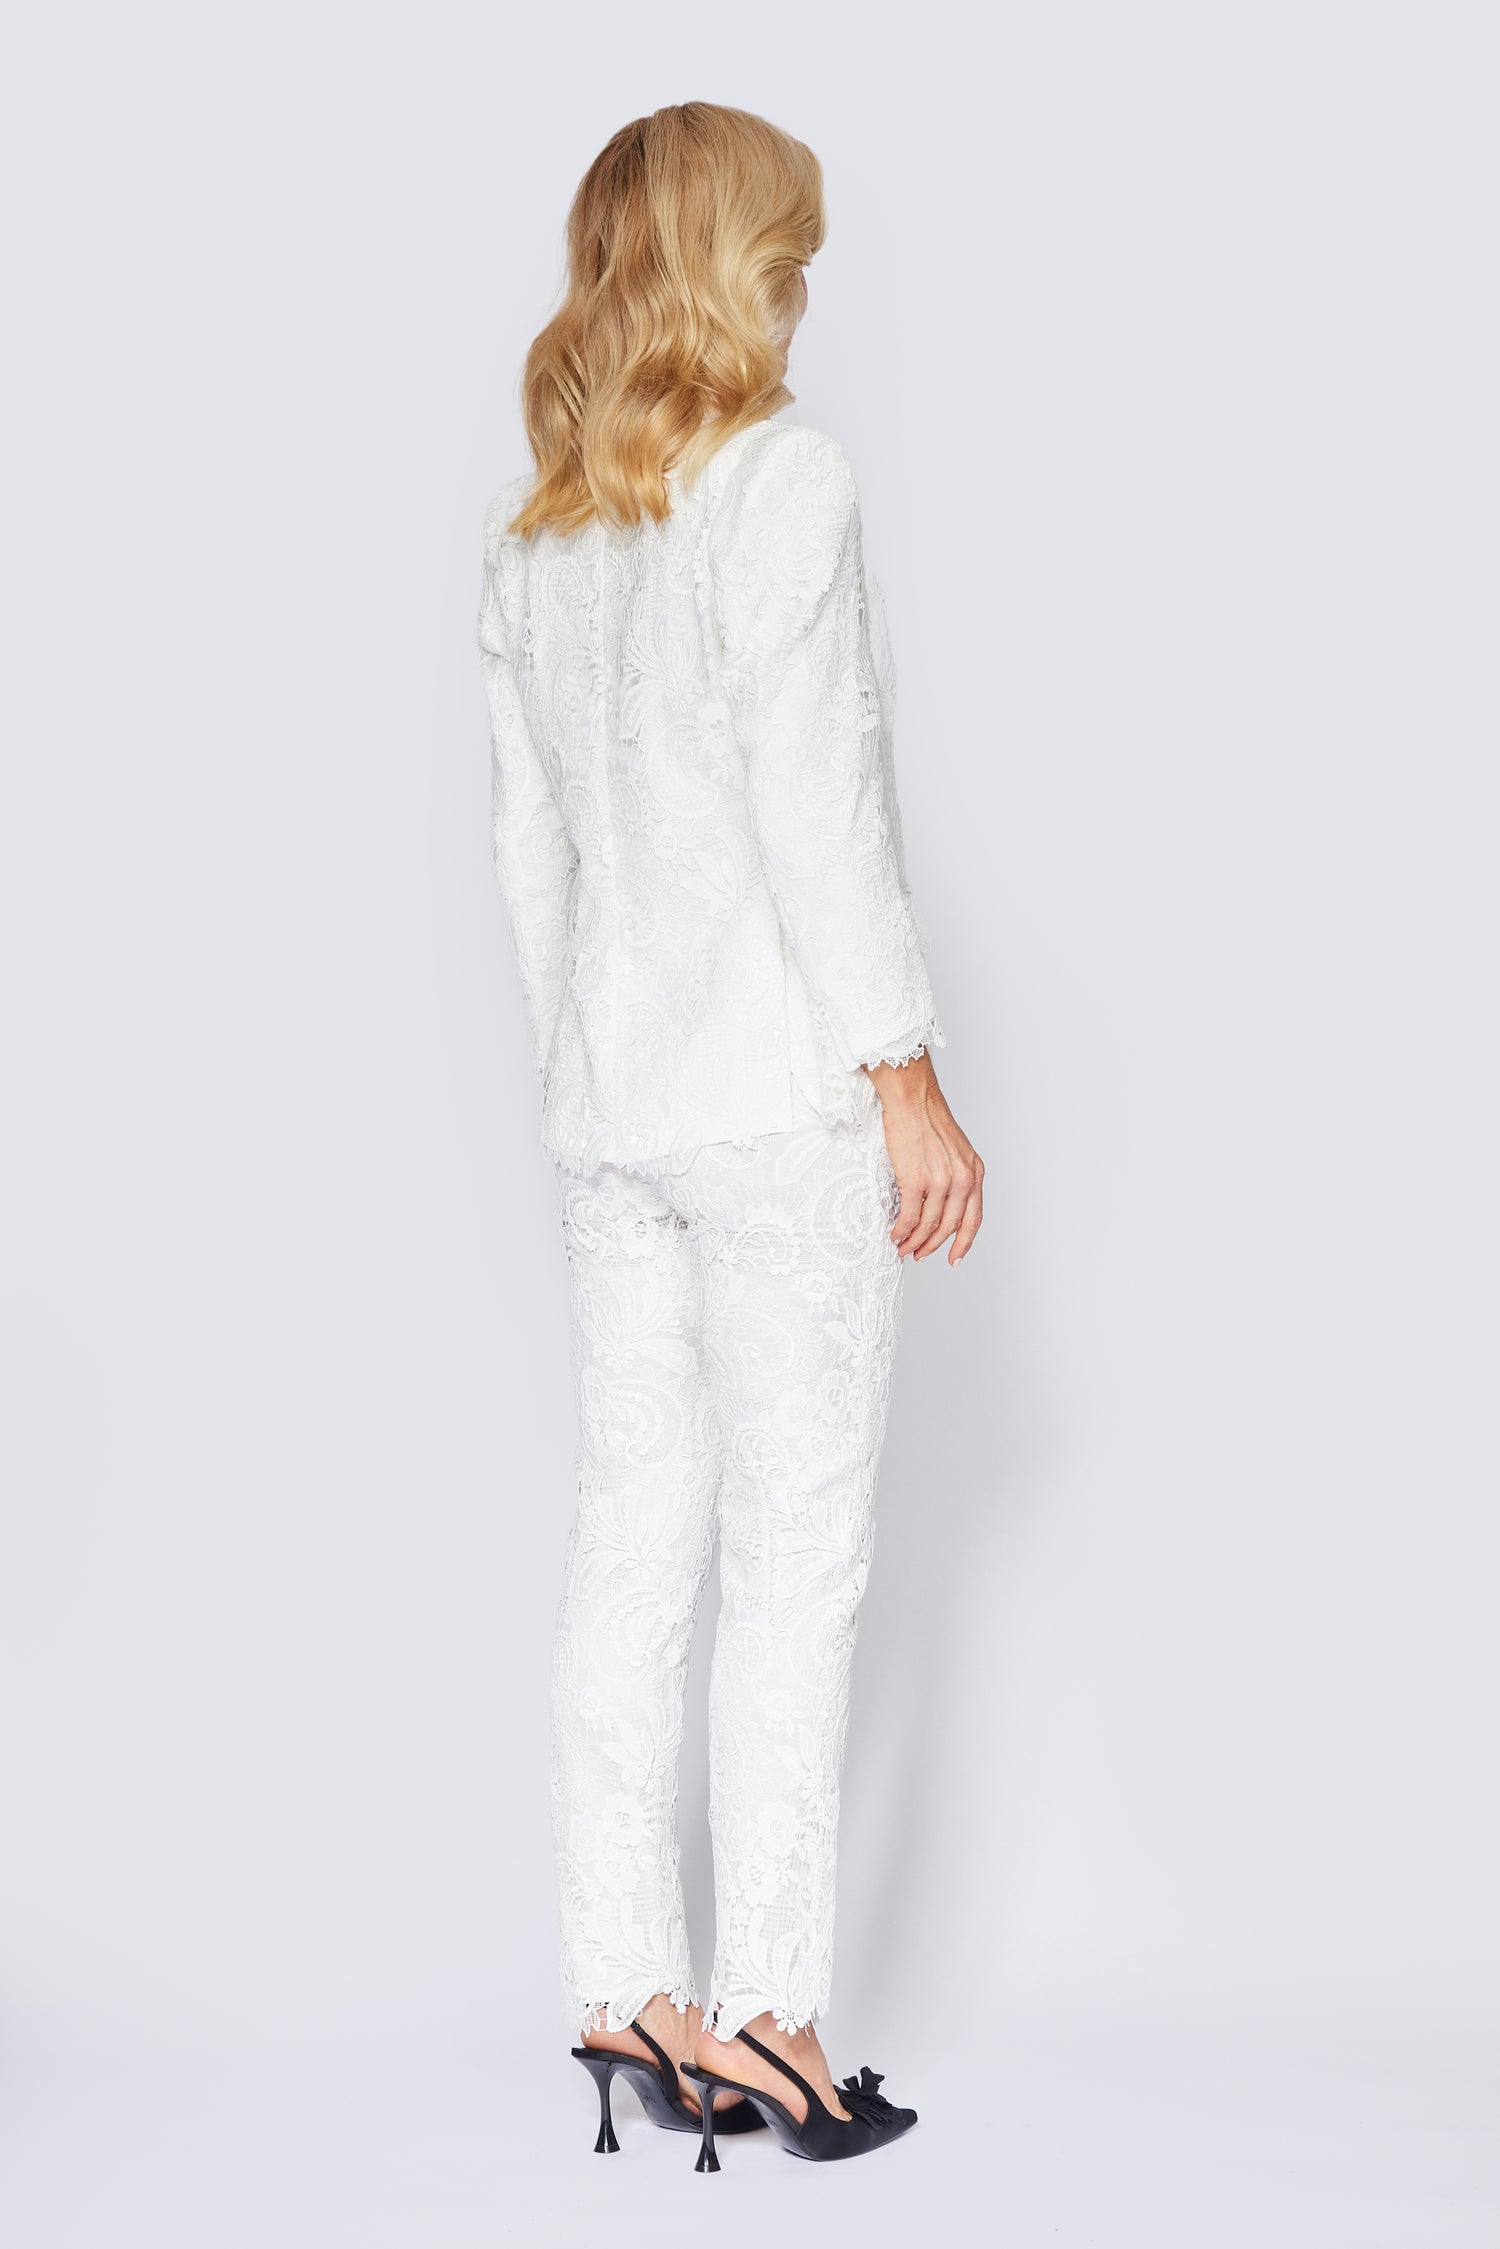 White Lace Jacket